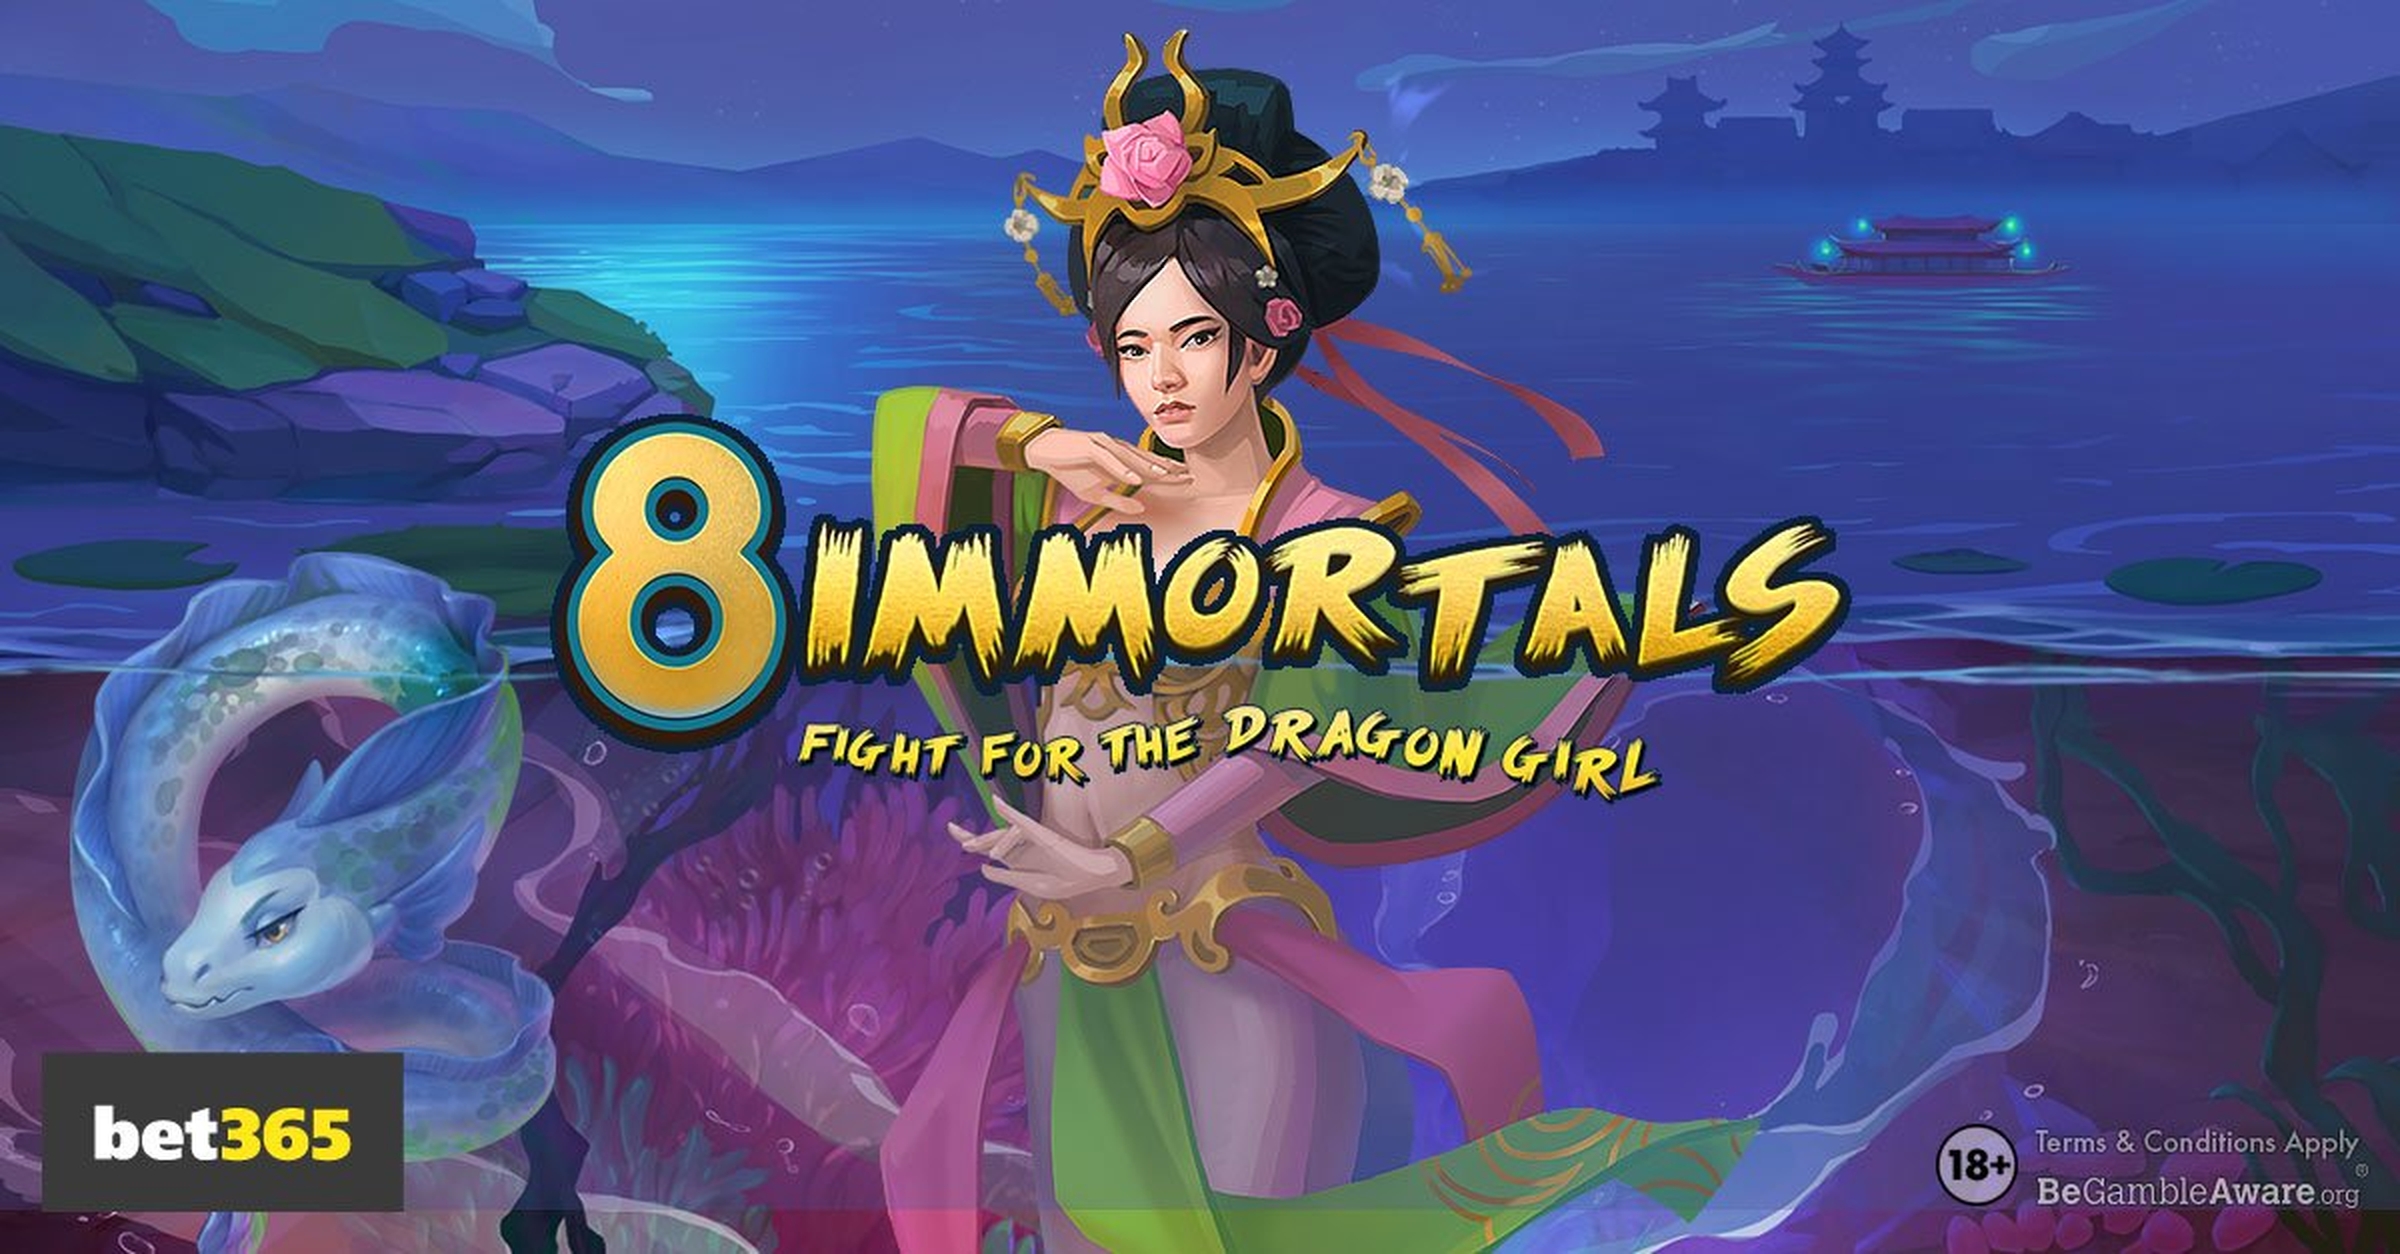 8 Immortals demo